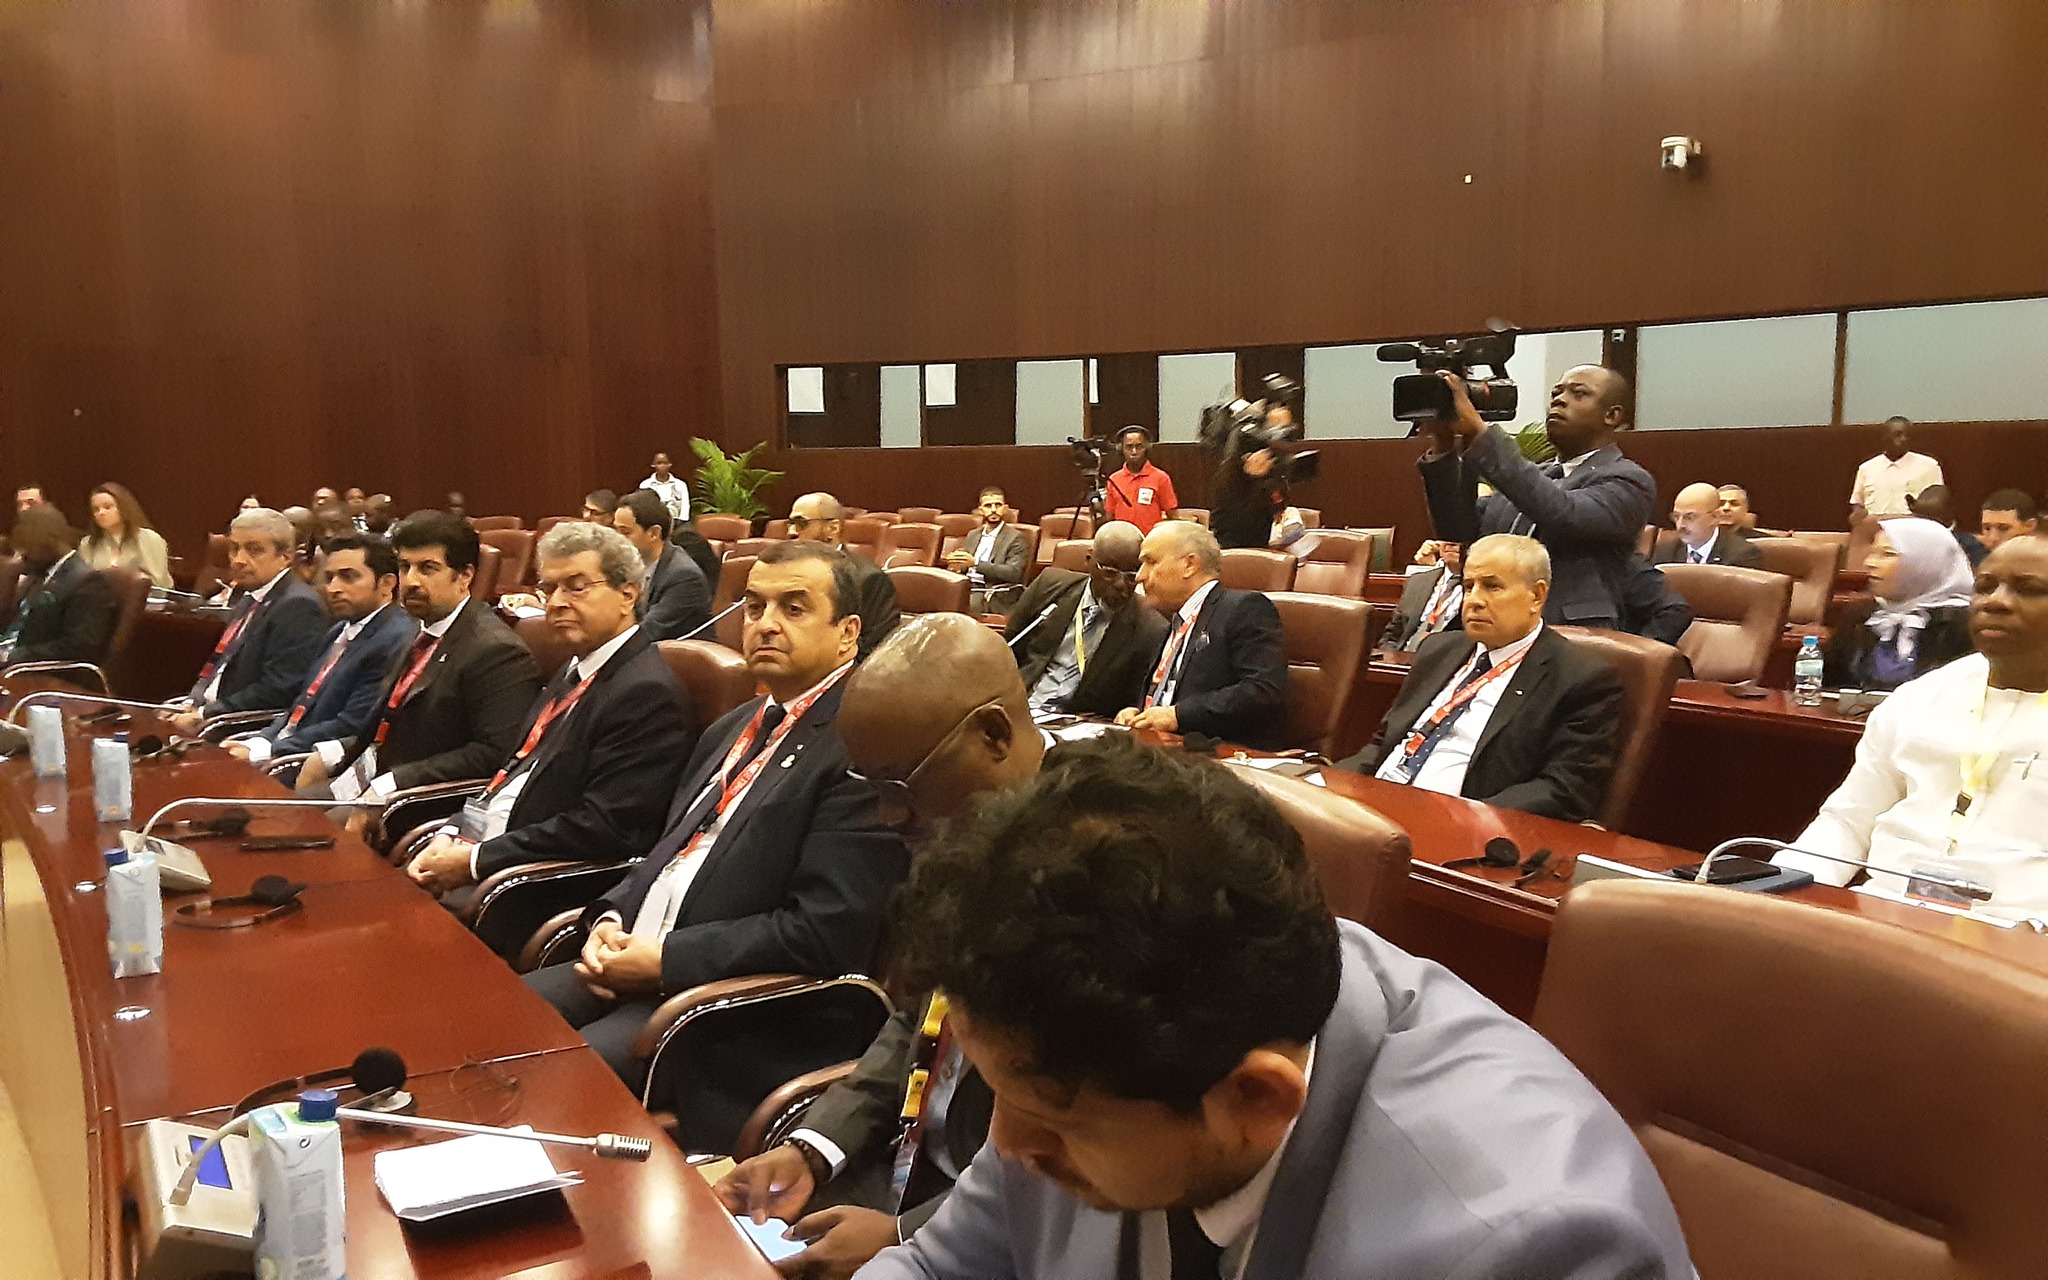 مشاركة وزير الطاقة الجزائري في اجتماع منتدى الدول المصدرة للغاز